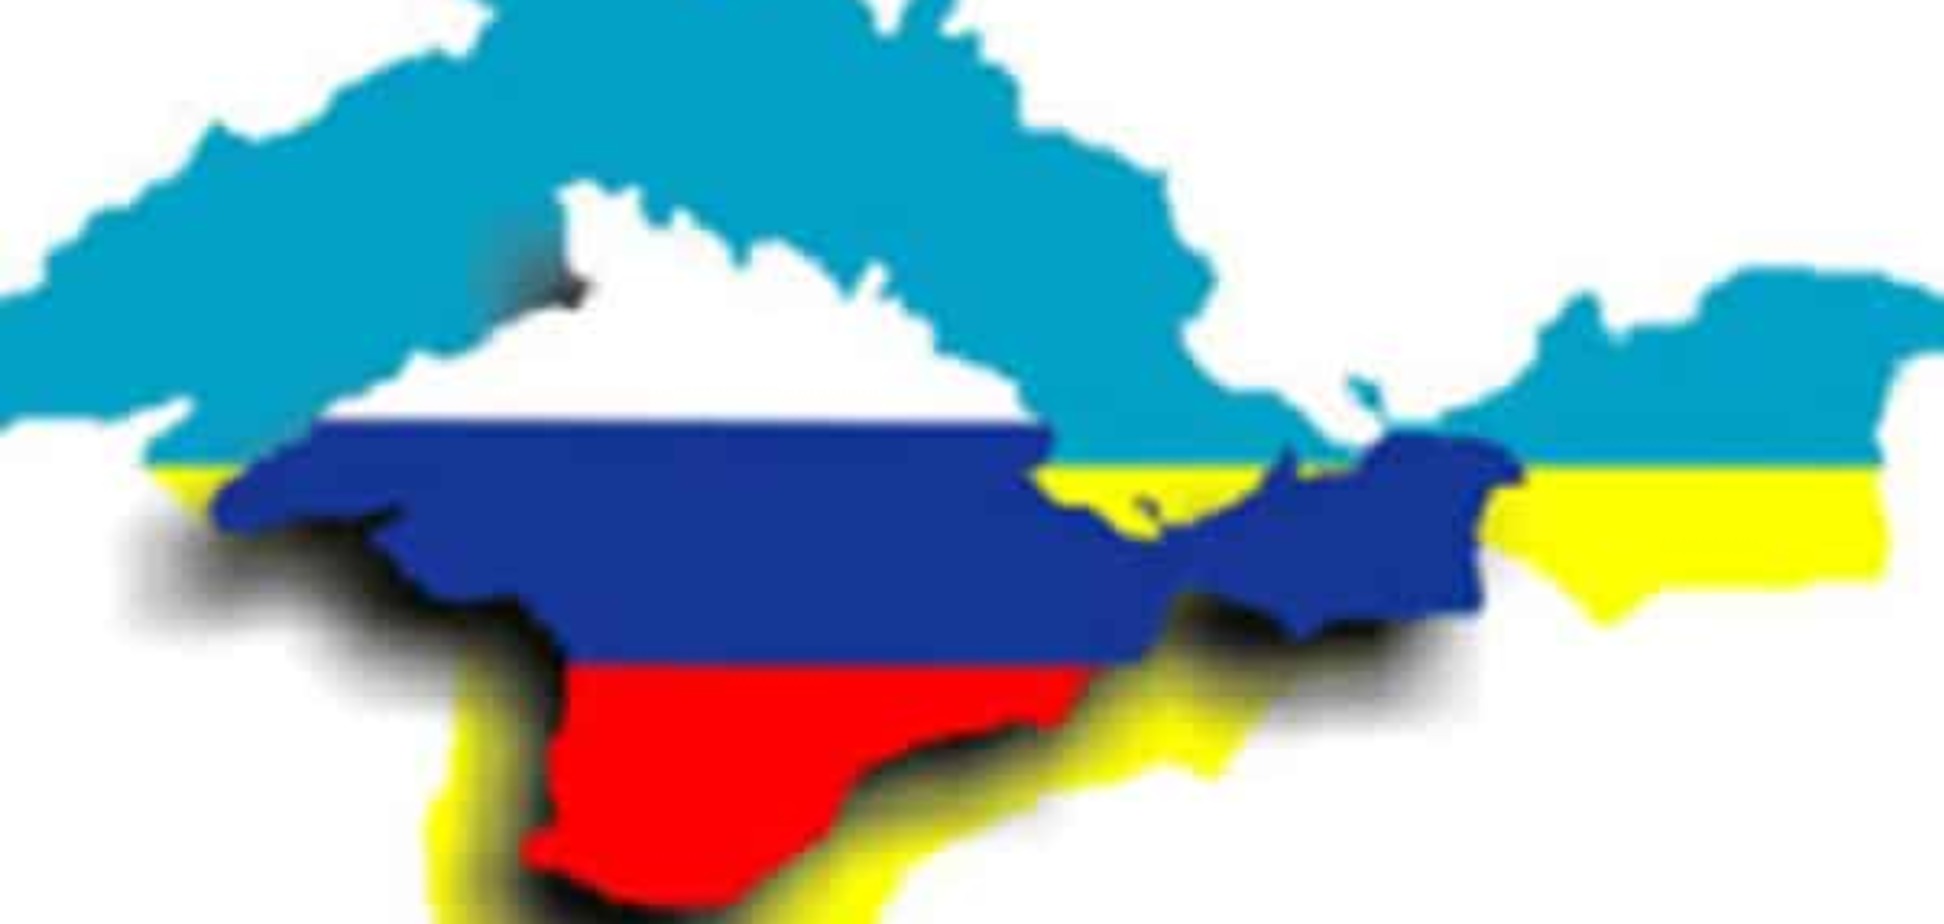 Недолго музыка играла: оккупированный Крым ожидает тяжелое бремя